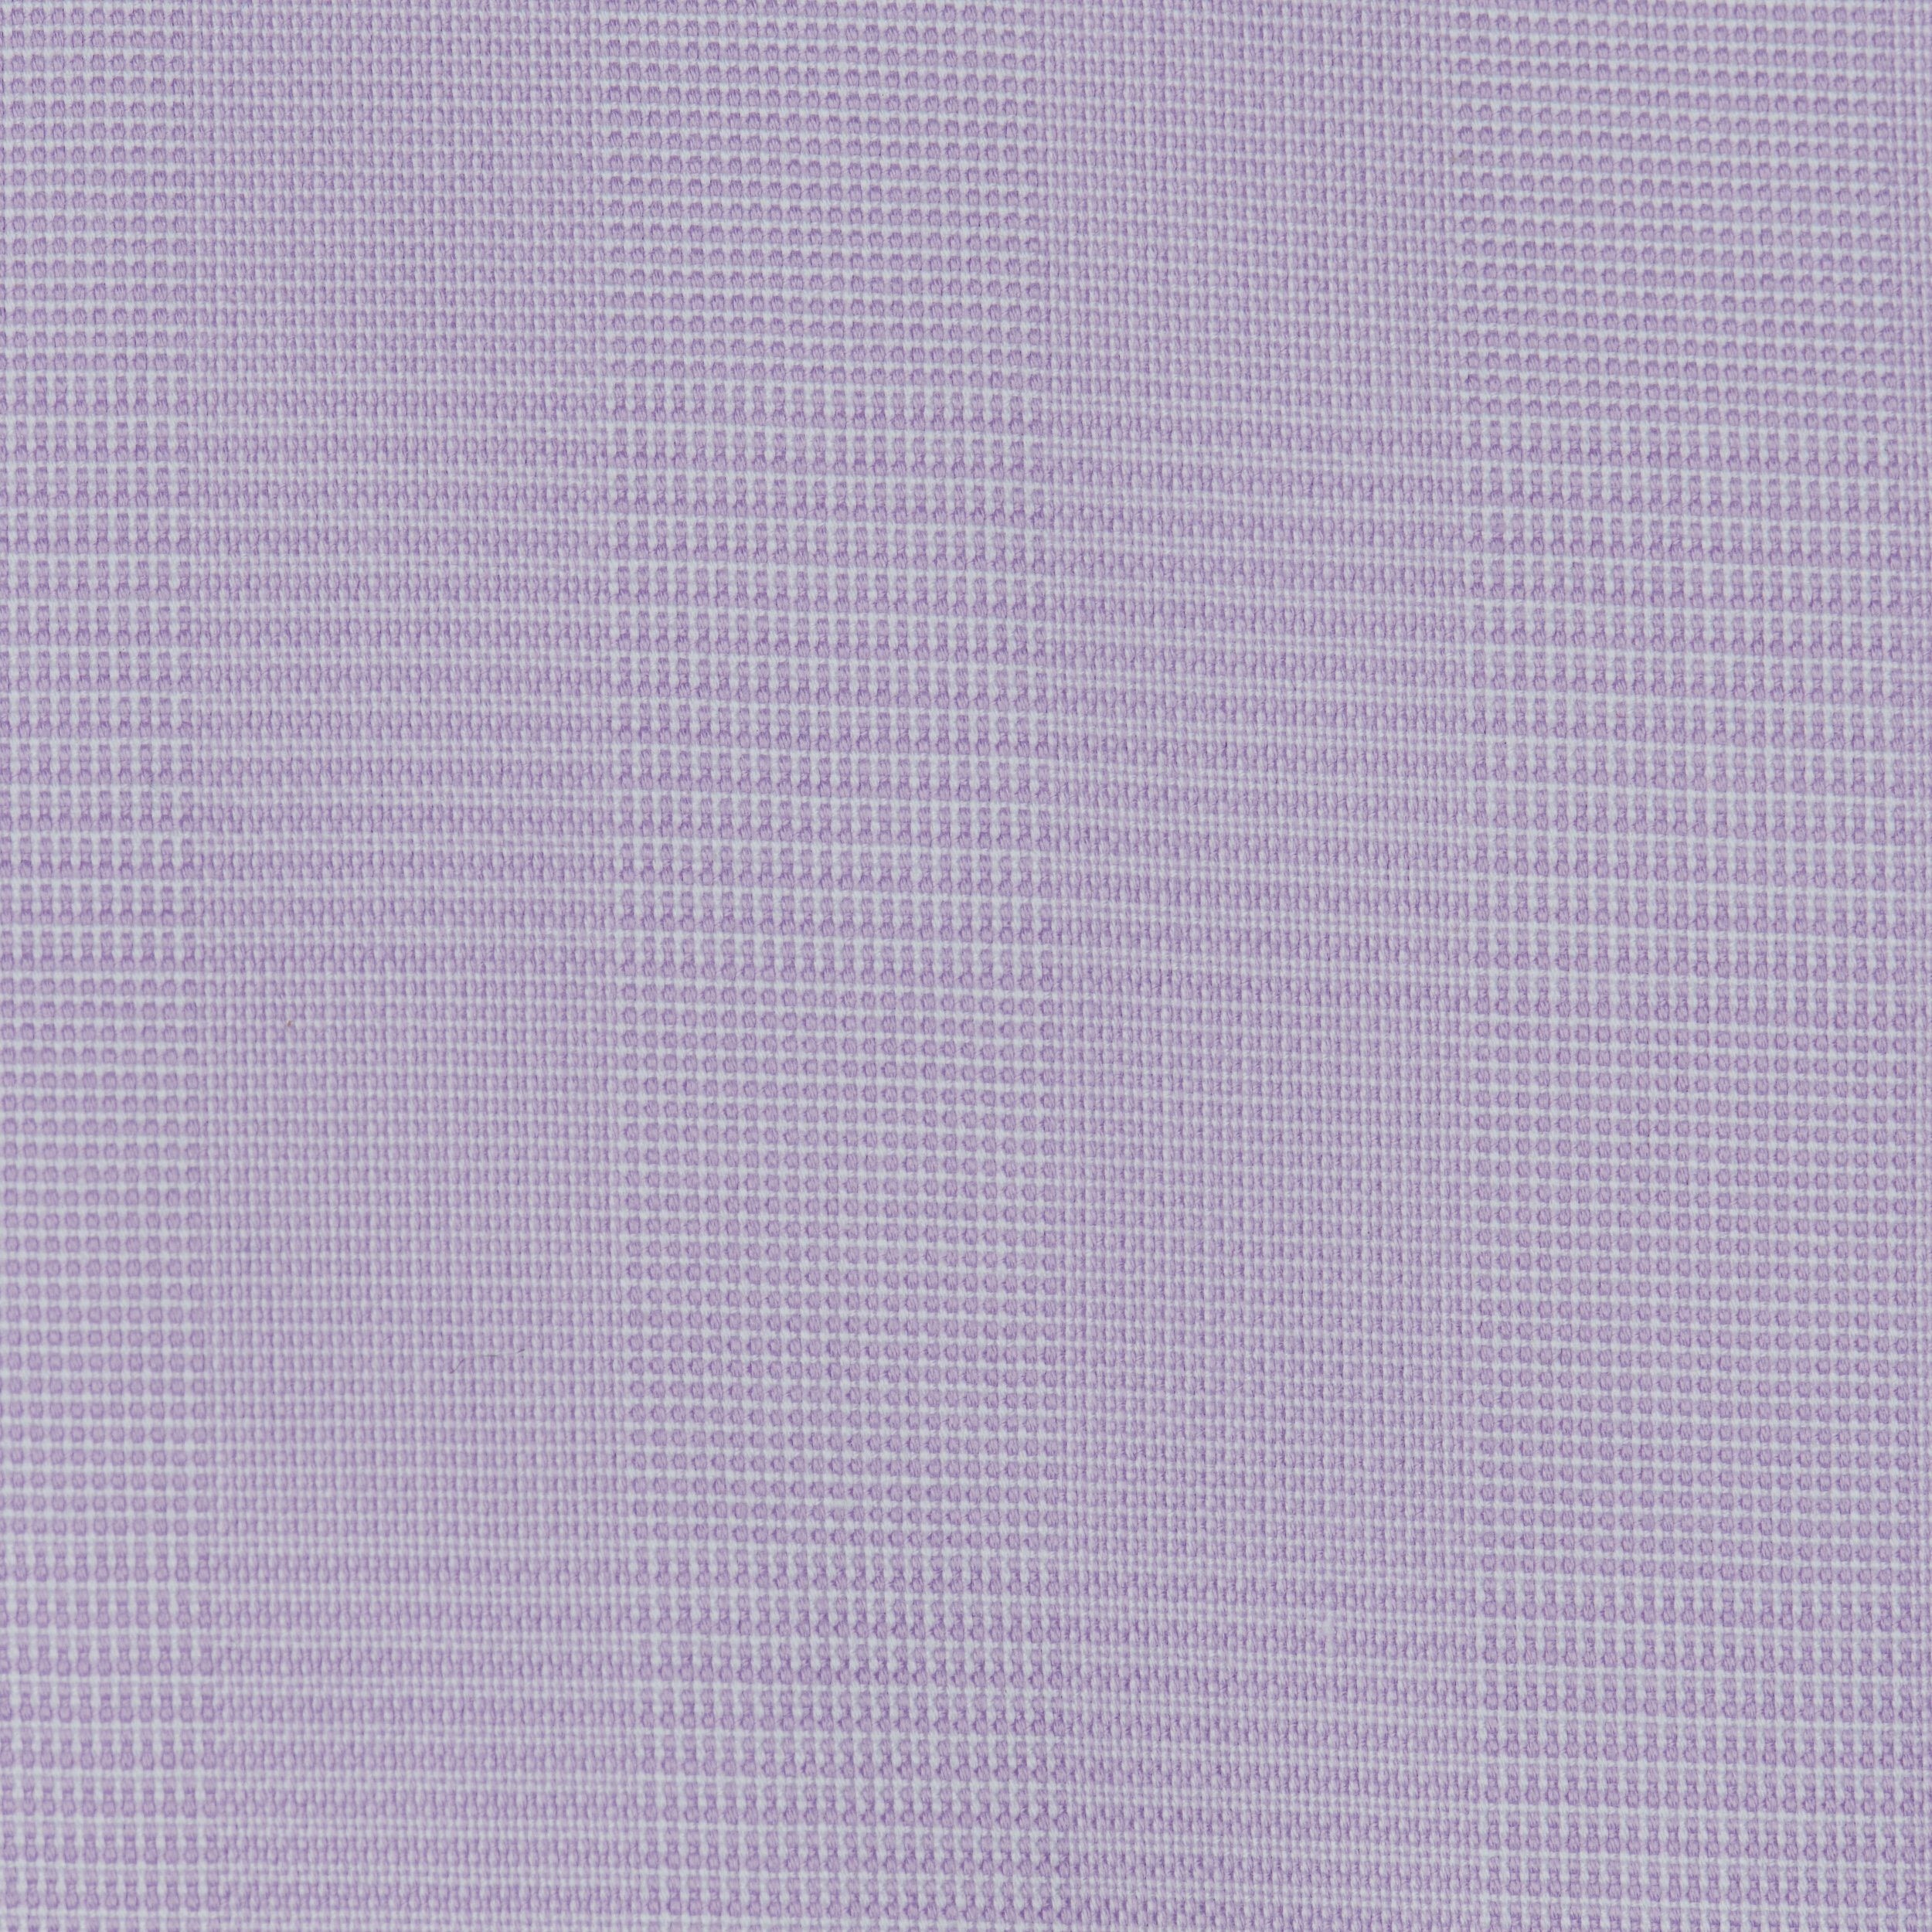 085 - Lavender Glen Plaid SC Dress Shirt Best Dress Shirt 